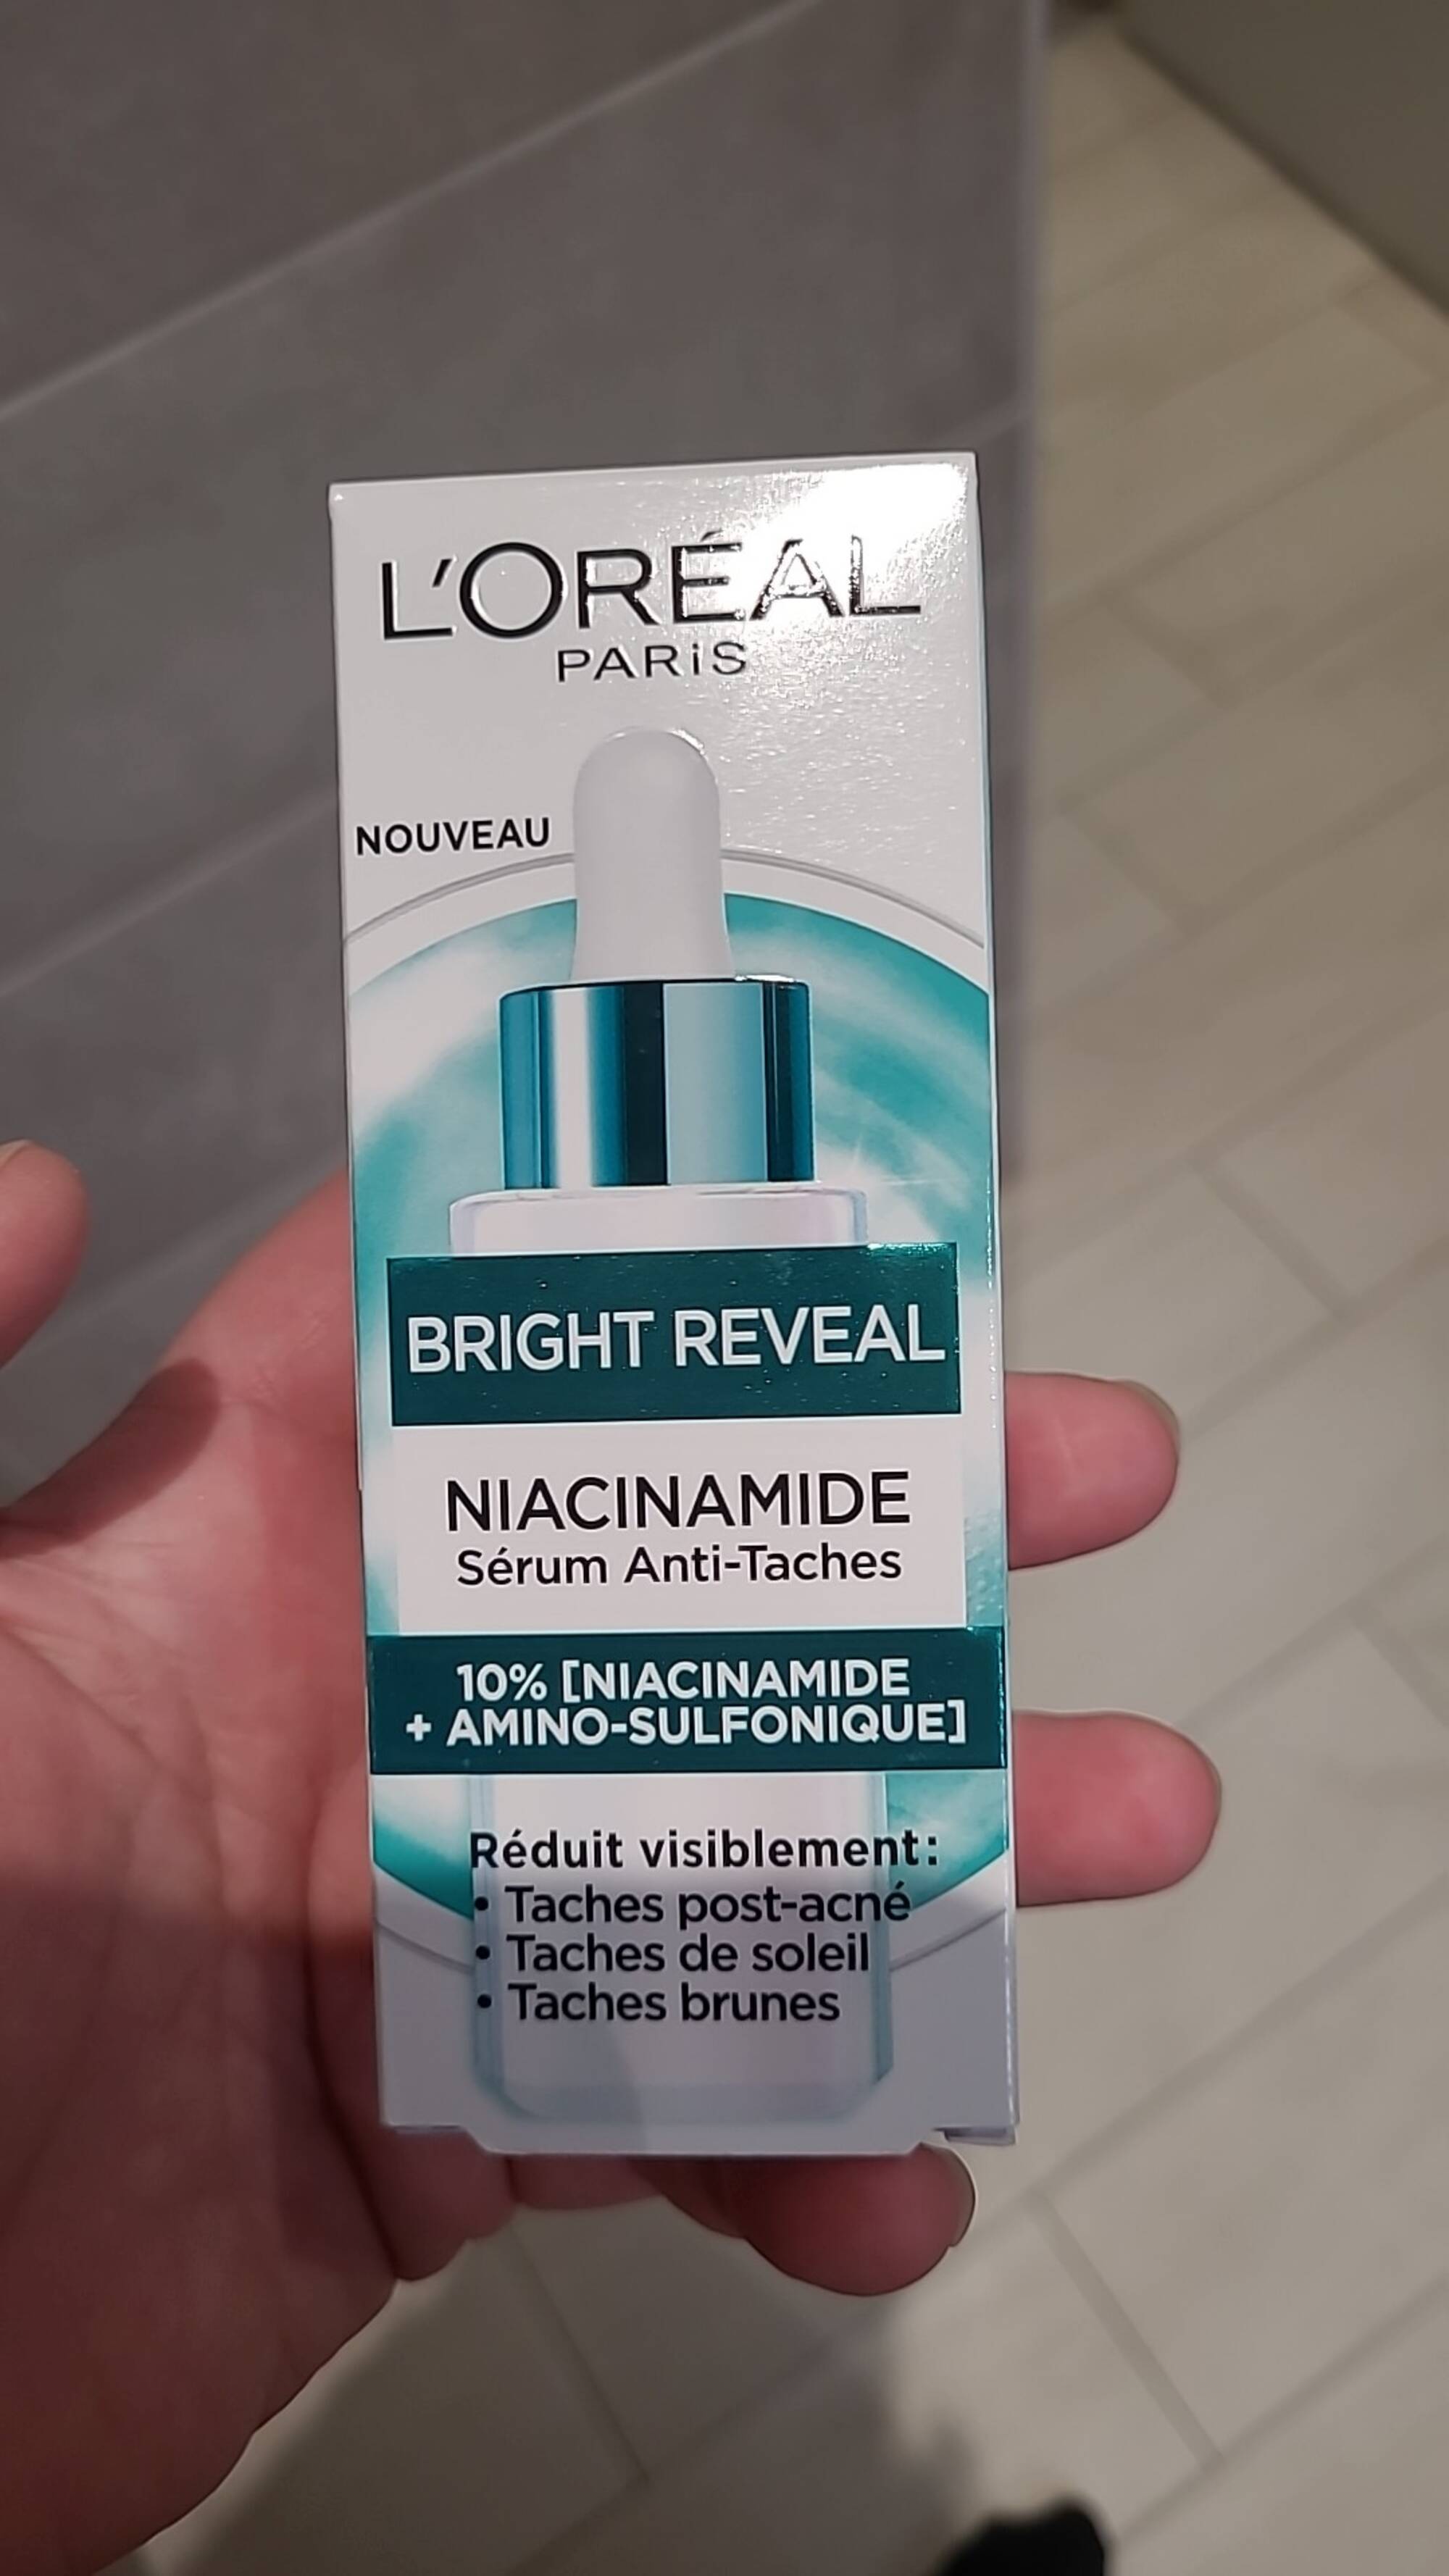 L'ORÉAL - Bright reveal - Sérum anti-taches niacinamide 